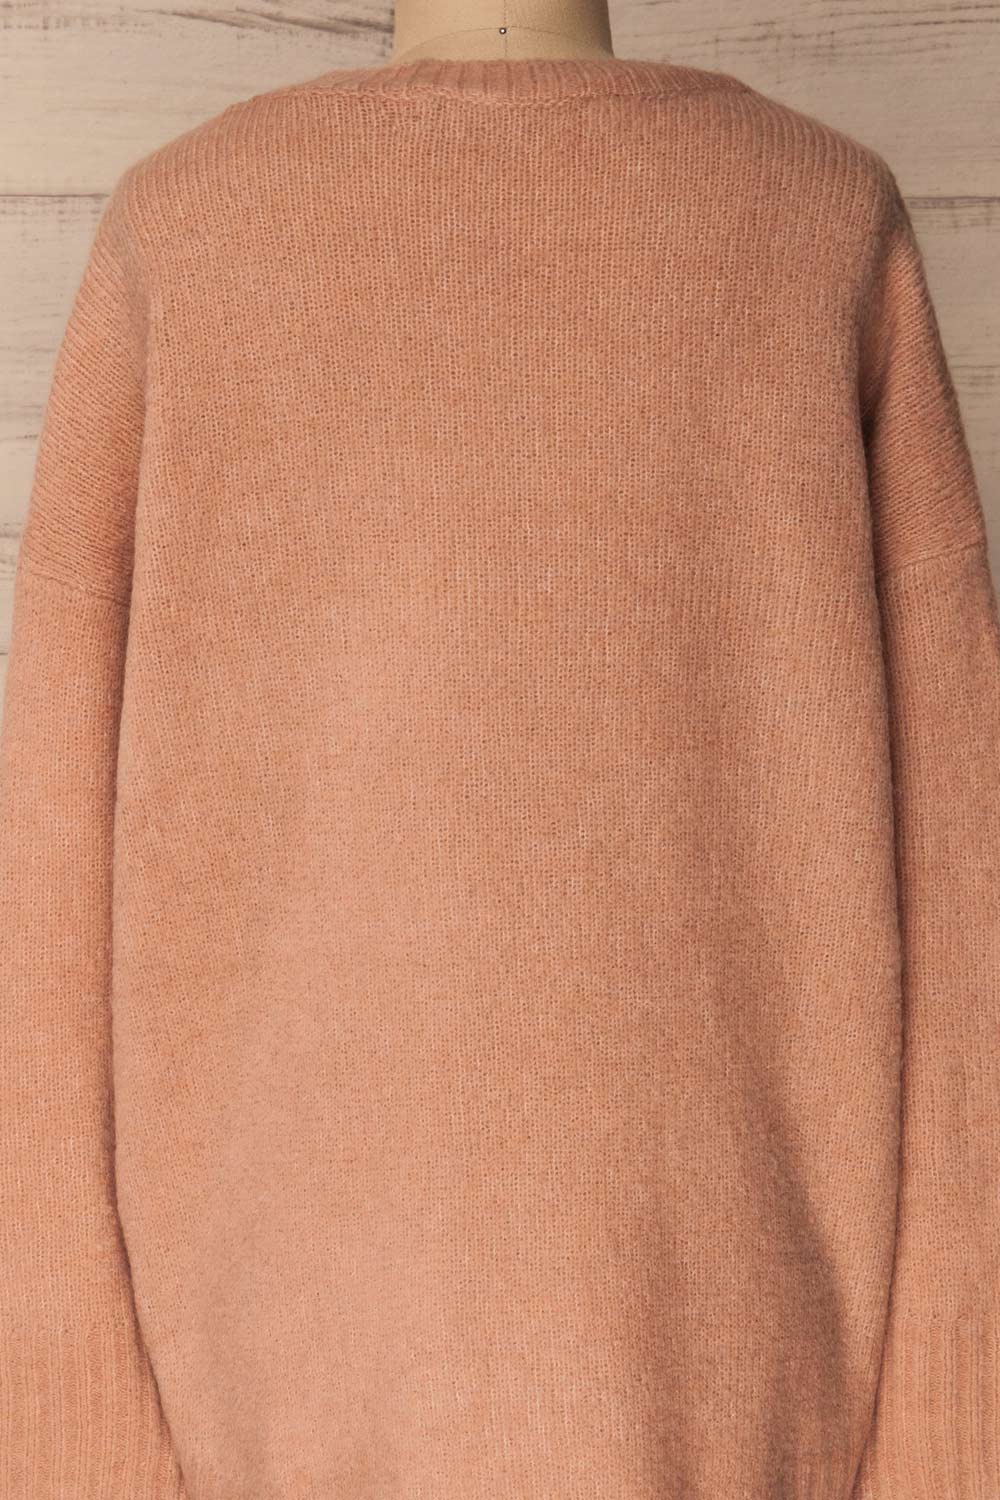 Calvao Dawn Dusty Pink Oversized Knit Sweater | La Petite Garçonne 6